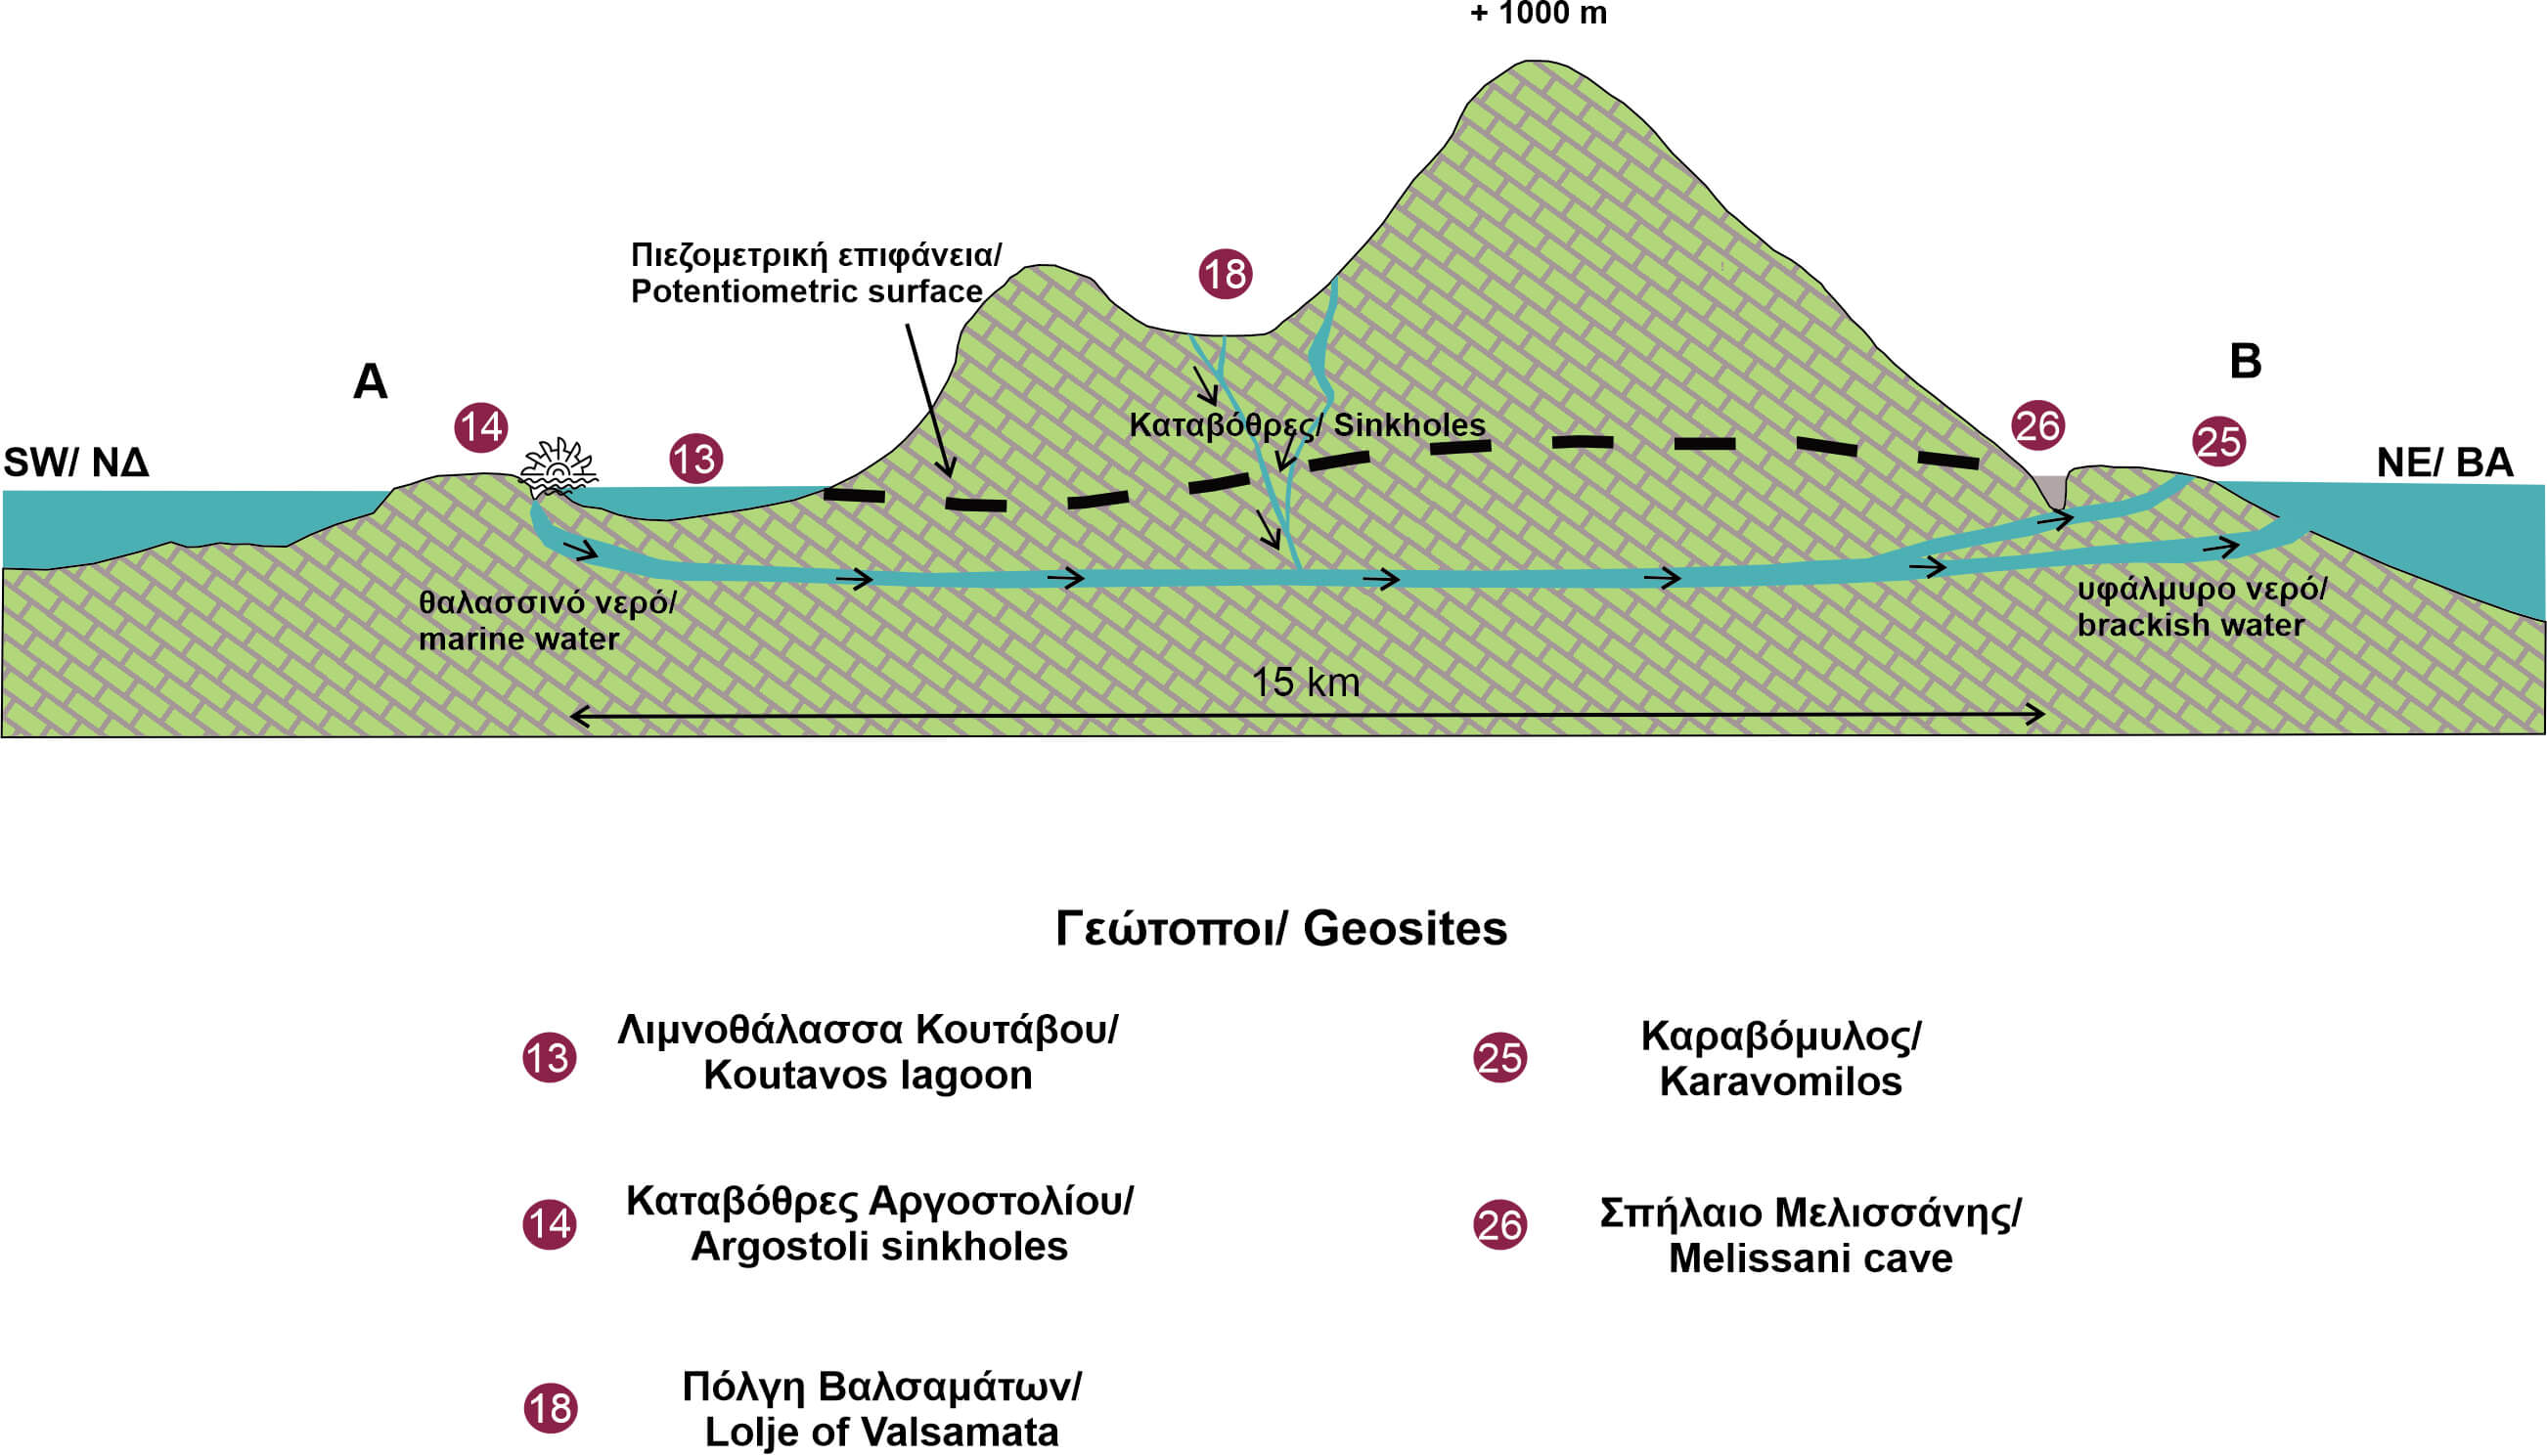 Σχηματική απεικόνιση της υδρολογικής κυκλοφορίας στους καρστικούς σχηματισμούς του νησιού της Κεφαλονιάς